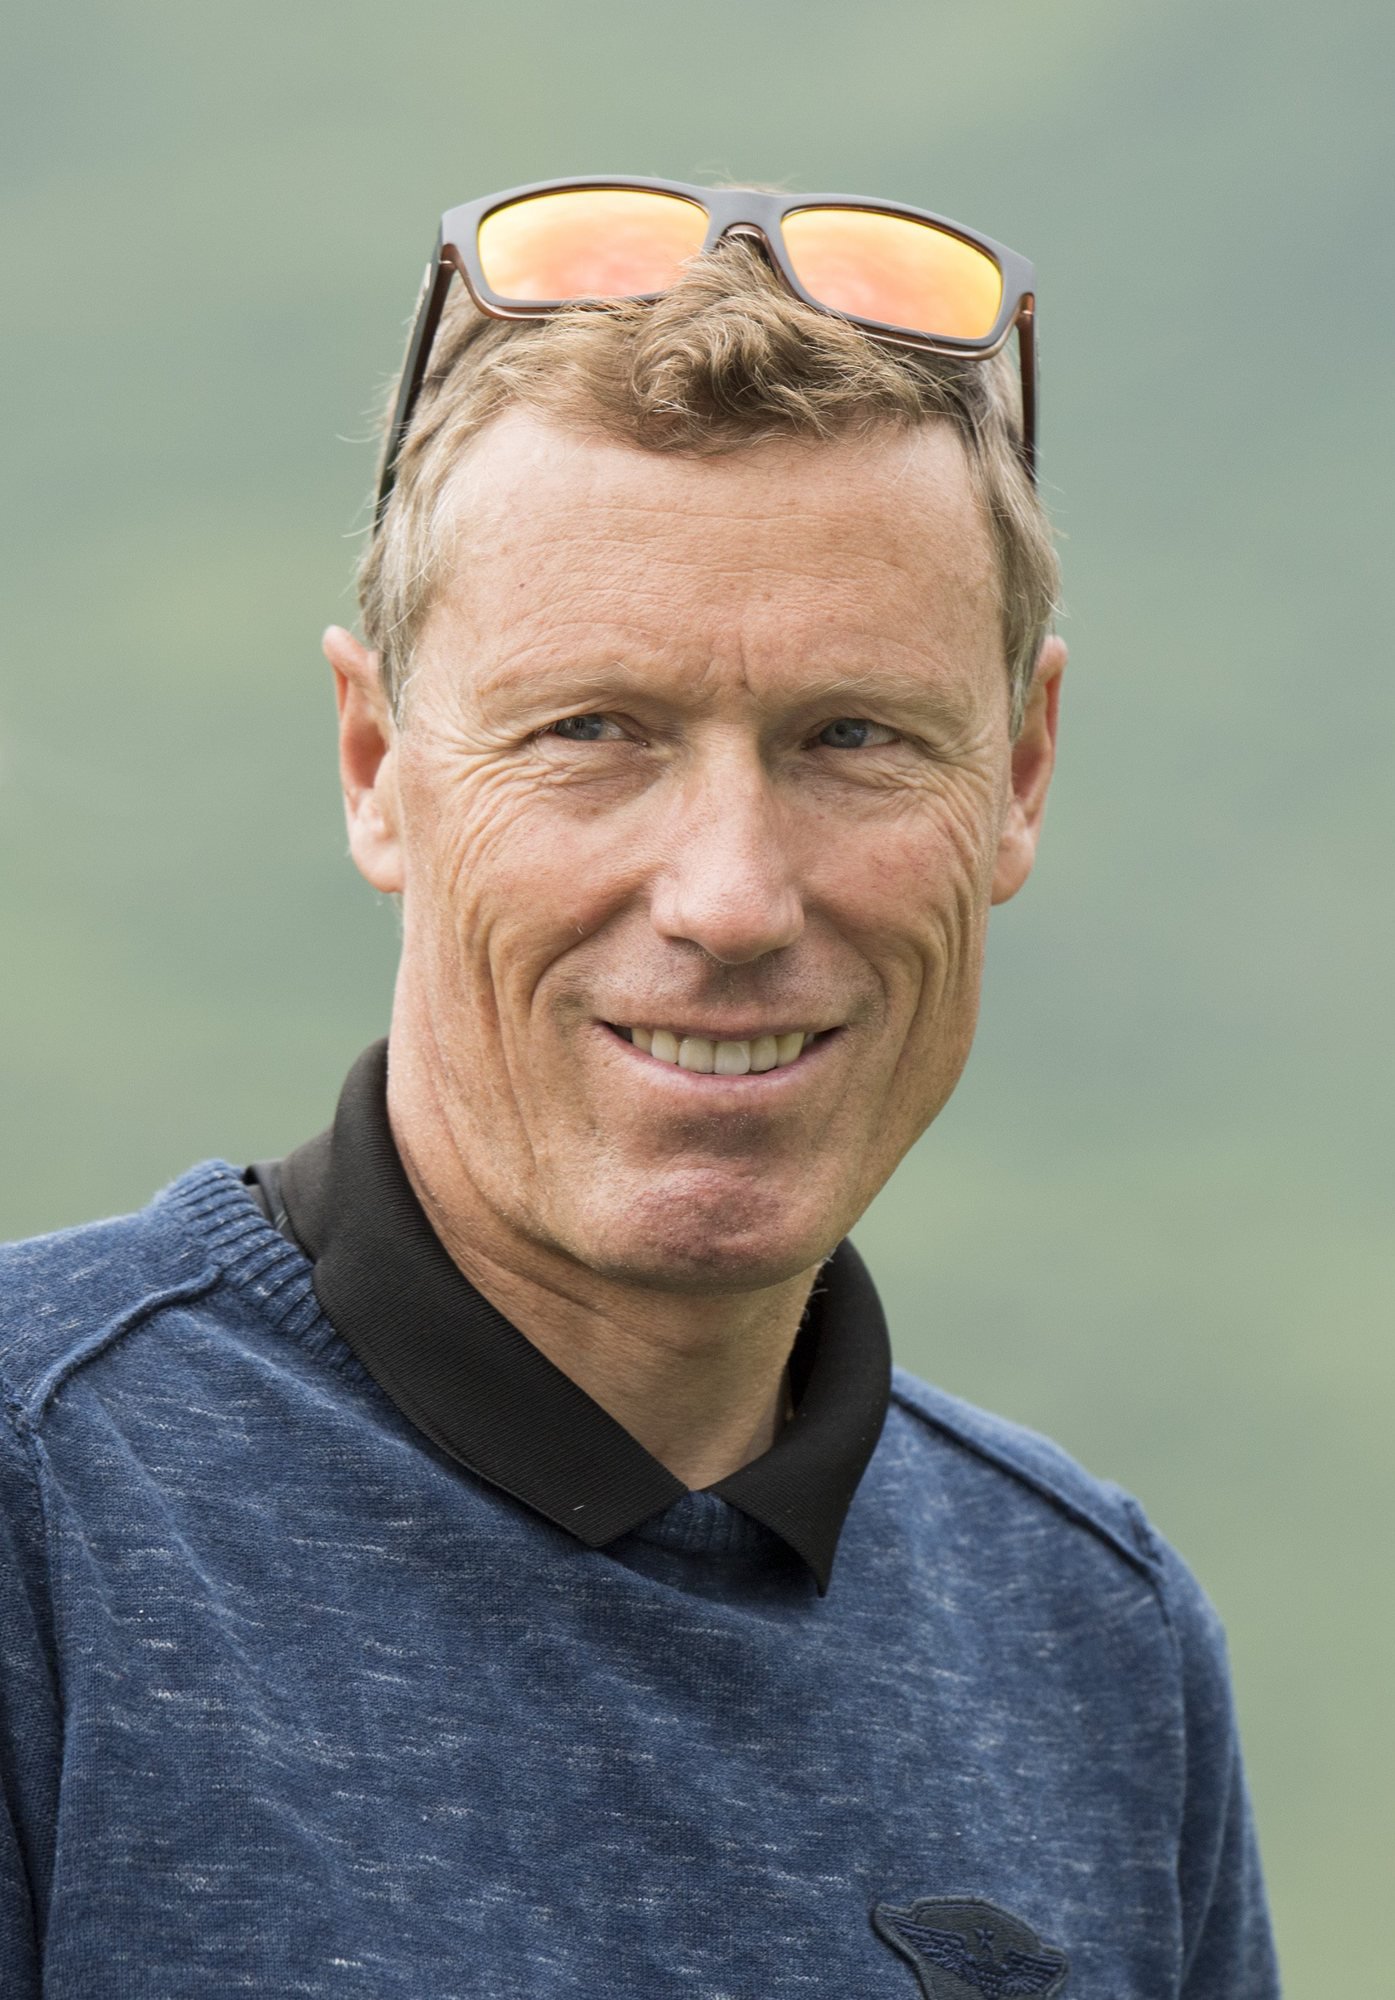 Der ehemalige Skirennfahrer Pirmin Zurbriggen am Eroeffnungsturnier des Golfplatzes "Andermatt Swiss Alps Golf Course", am Samstag, 25. Juni 2016, in Andermatt. (KEYSTONE/Urs Flueeler)